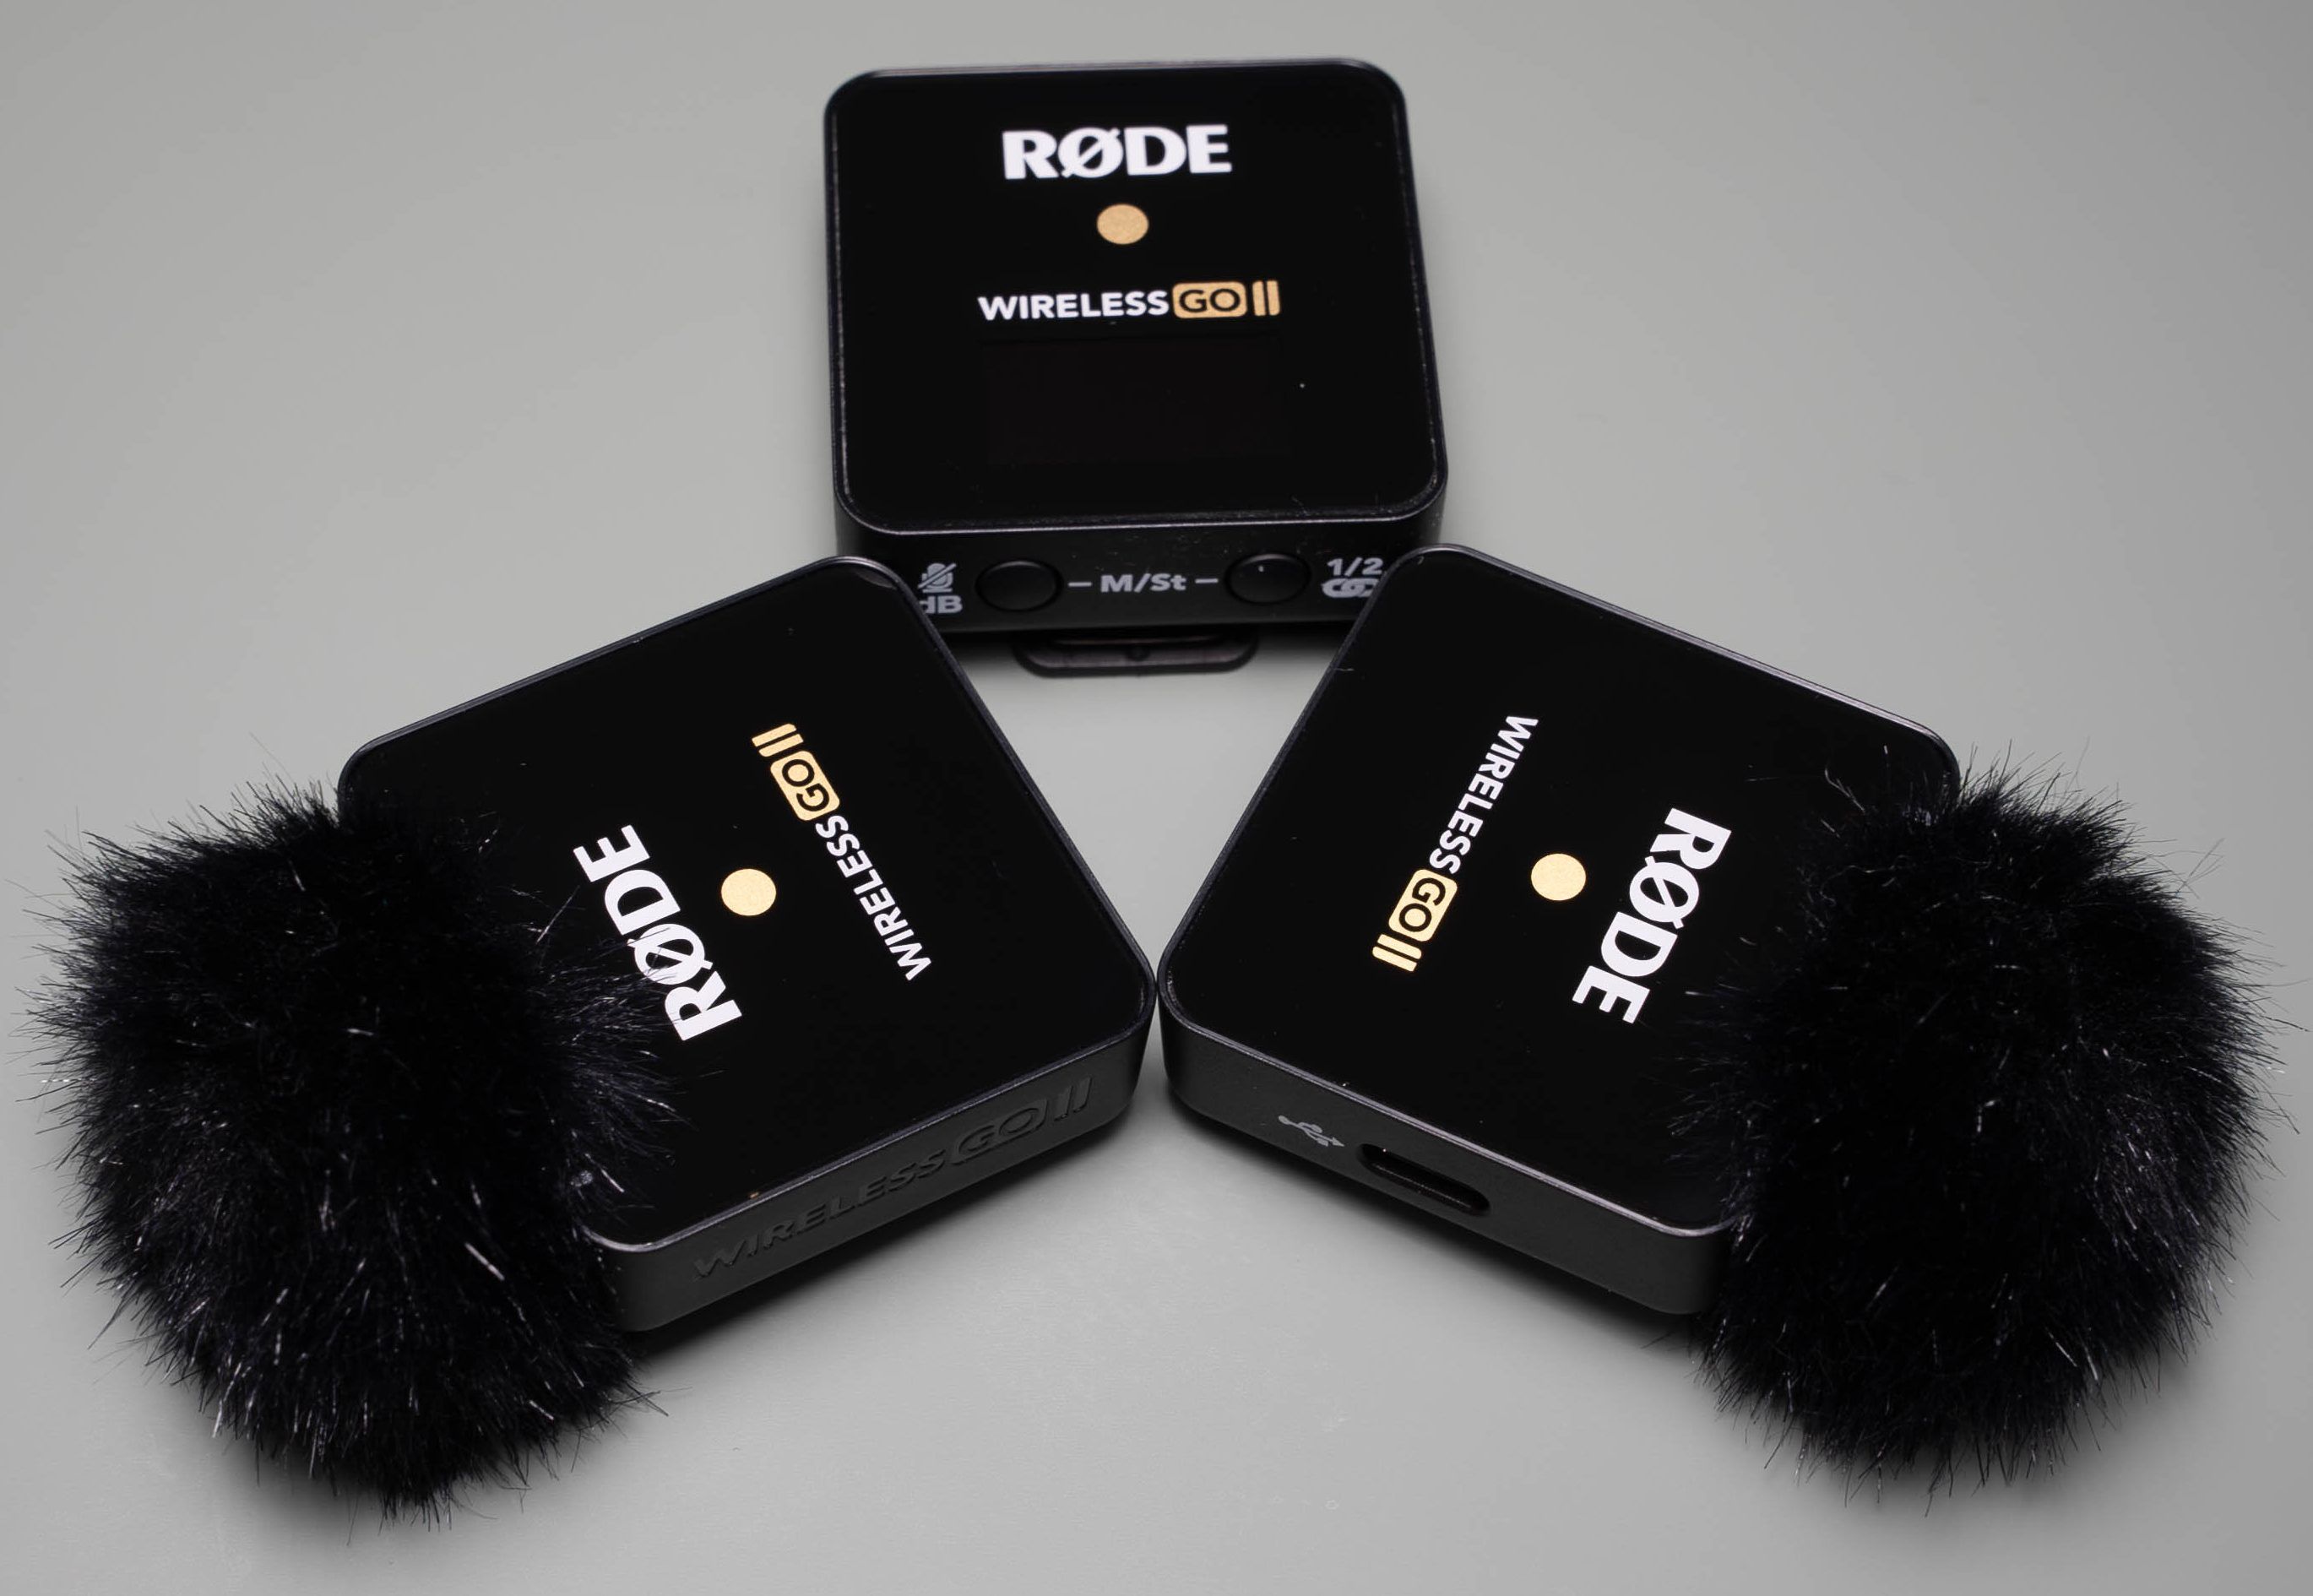 Rode Wireless Go II 10 e1614632017507 - Rode Wireless Go II Review: più di un aggiornamento. È un punto di svolta